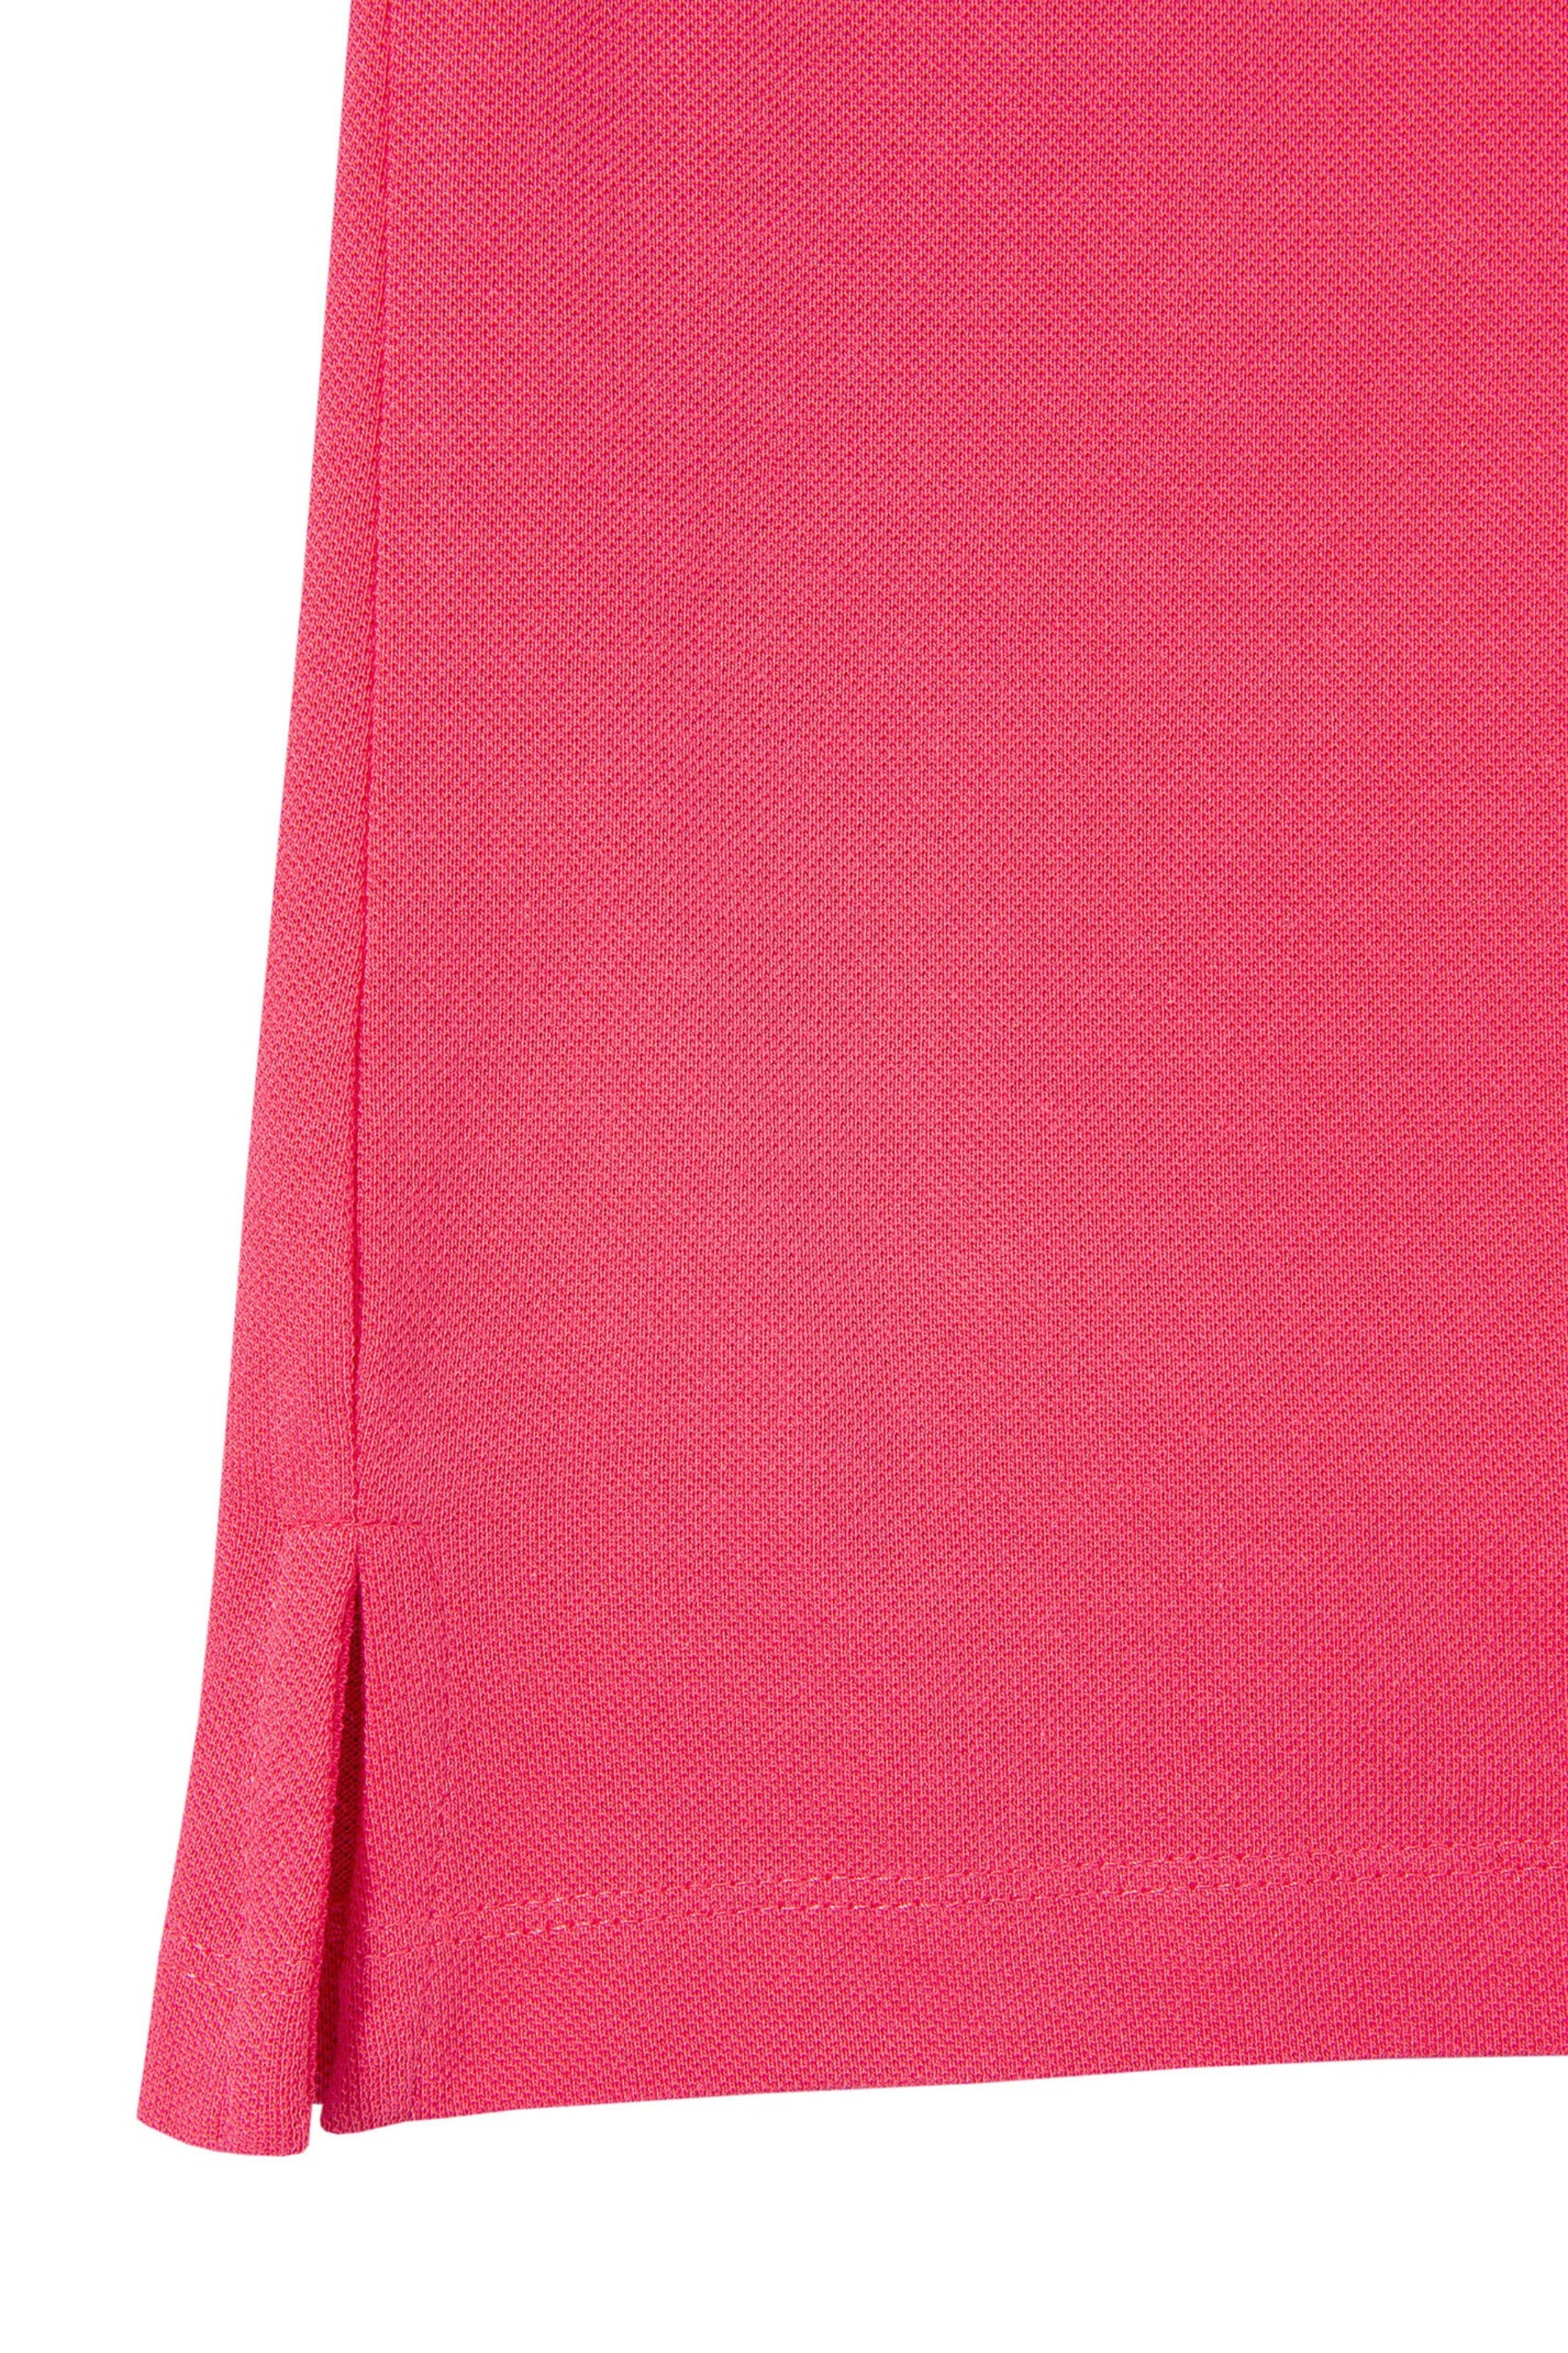 Damenmode Trachten M.X.O Trachtenshirt in rot 